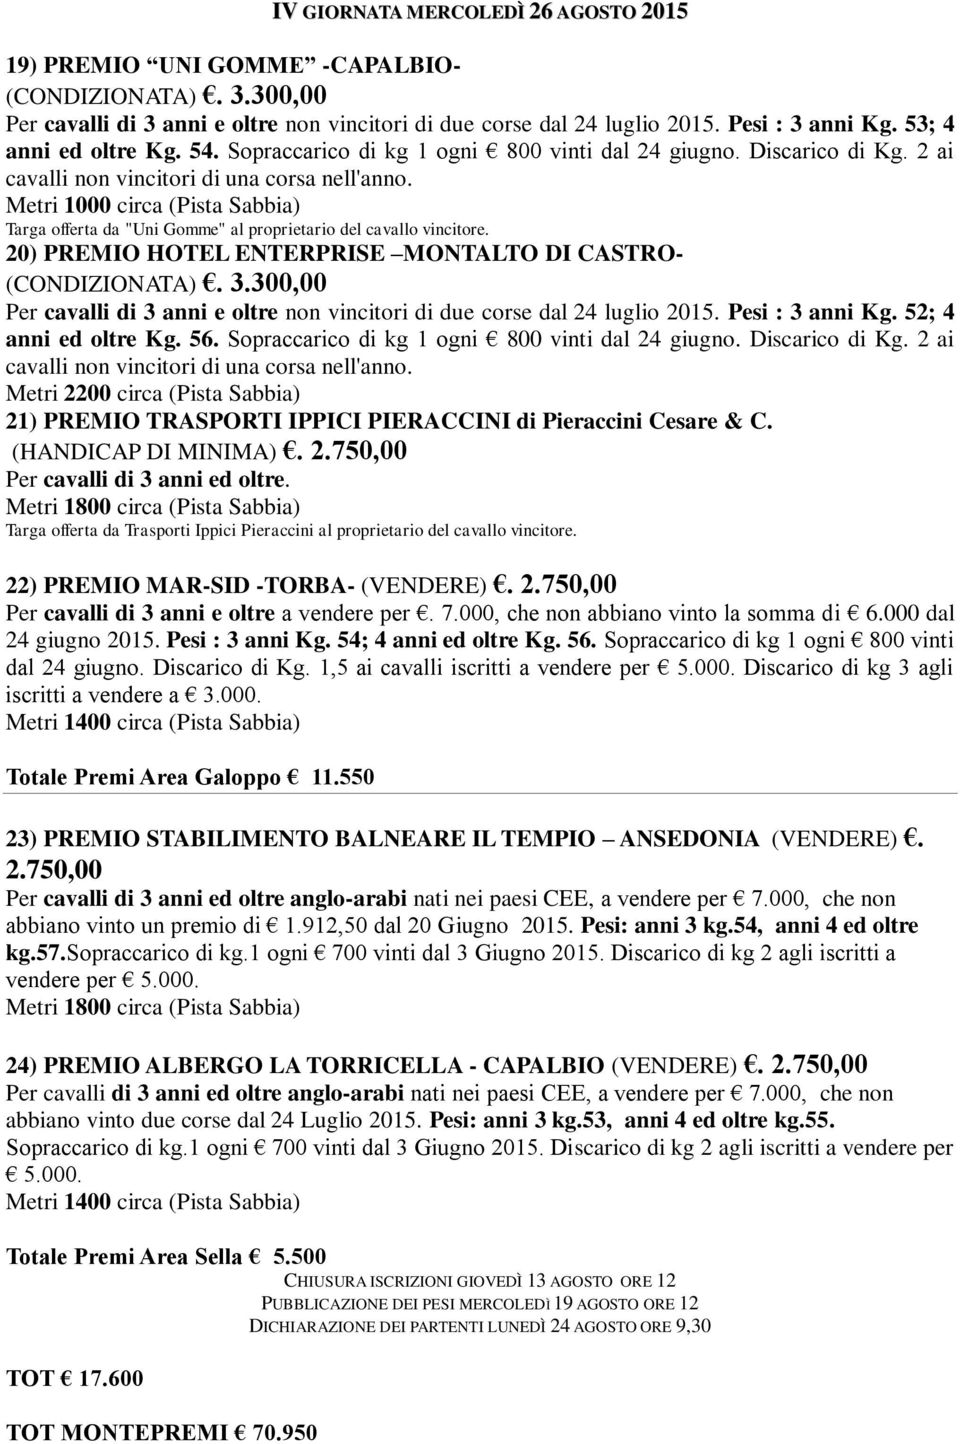 Targa offerta da "Uni Gomme" al proprietario del cavallo vincitore. 20) PREMIO HOTEL ENTERPRISE MONTALTO DI CASTRO- (CONDIZIONATA). 3.